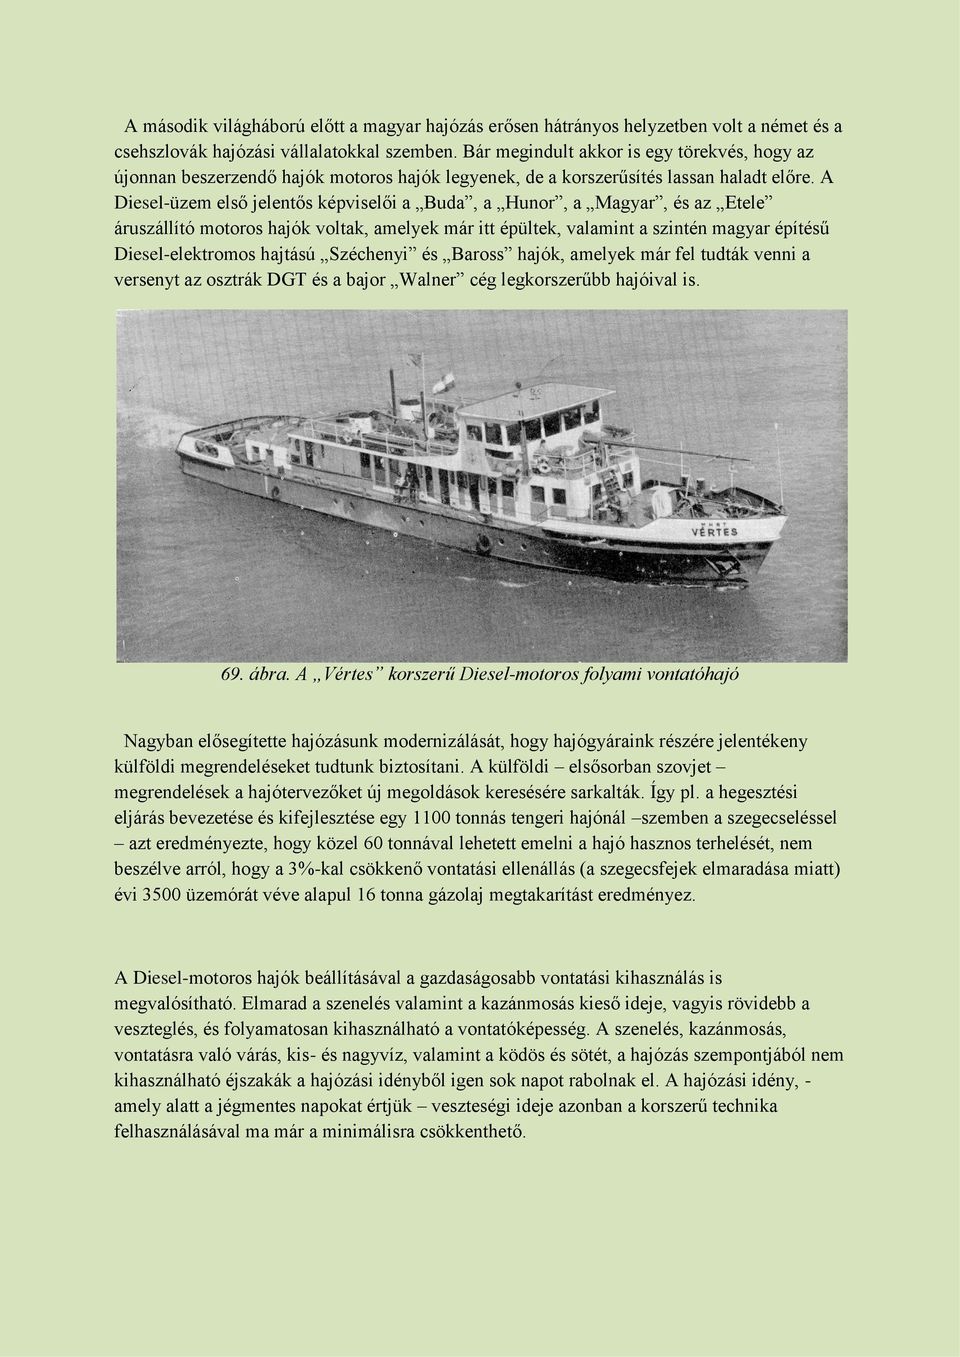 A Diesel-üzem első jelentős képviselői a Buda, a Hunor, a Magyar, és az Etele áruszállító motoros hajók voltak, amelyek már itt épültek, valamint a szintén magyar építésű Diesel-elektromos hajtású